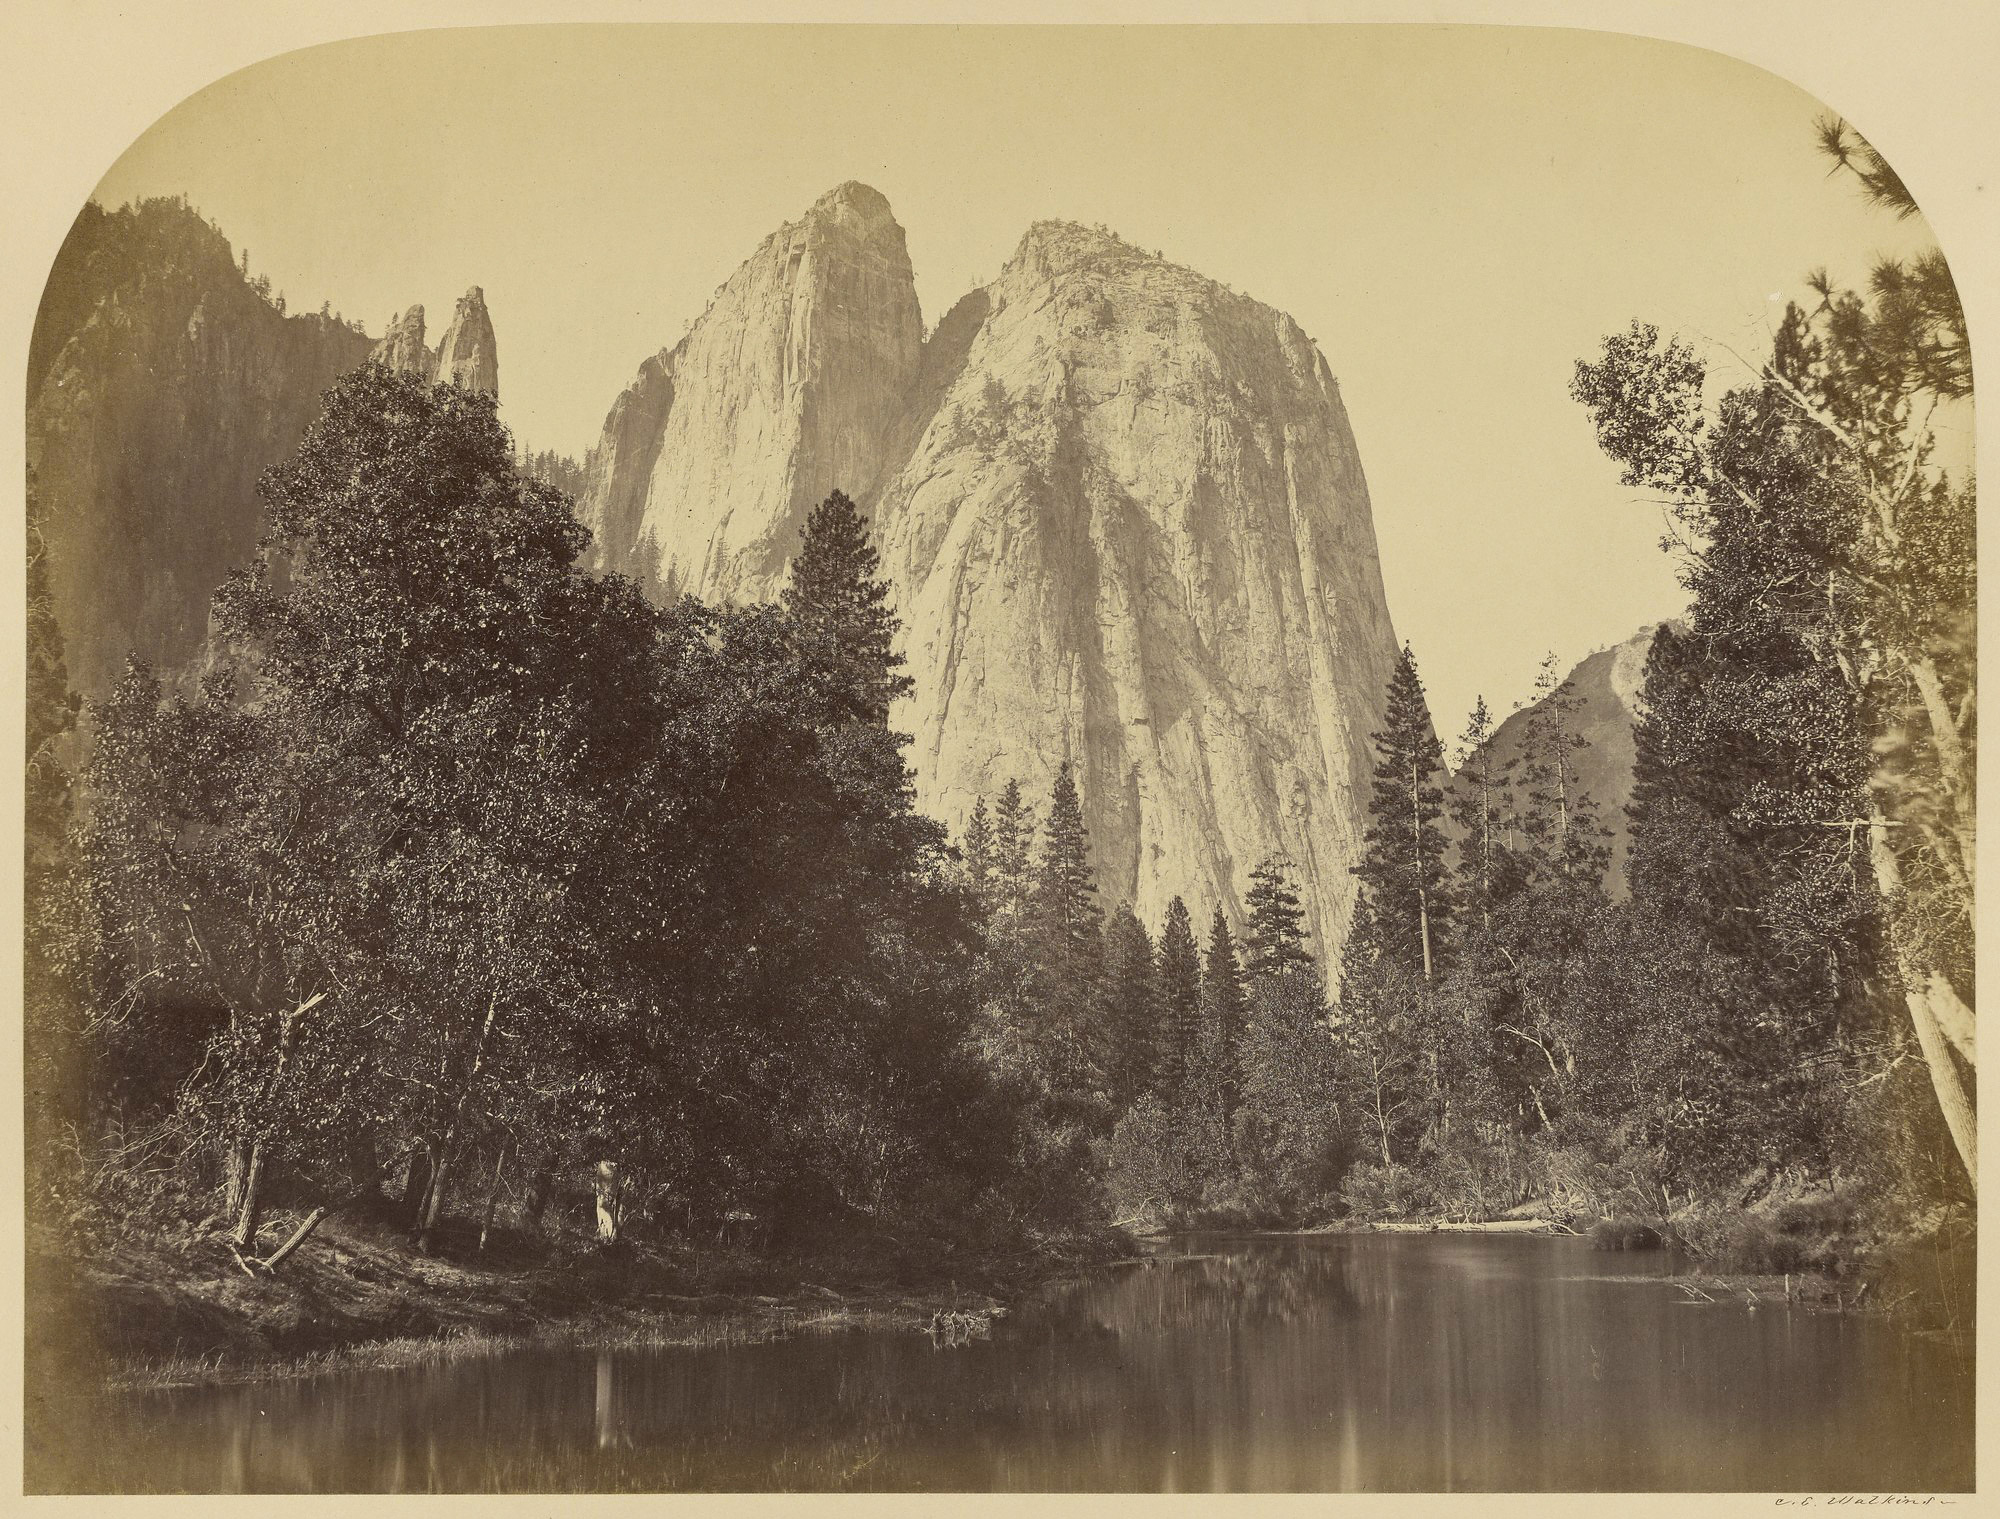 River View - Cathedral Rocks - Yo Semite. 1861.